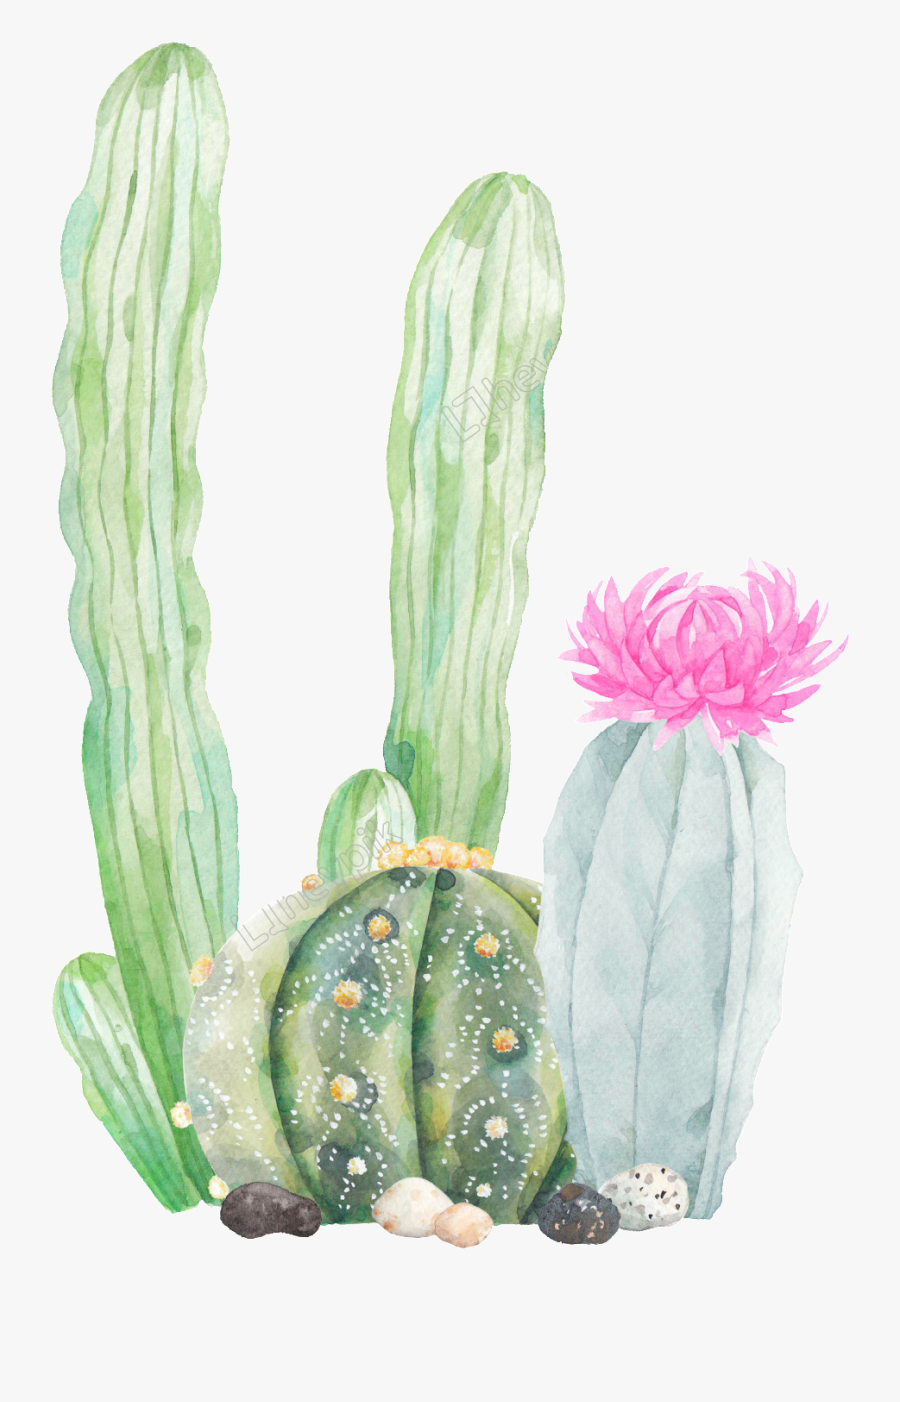 Transparent Cute Cactus Clipart - Transparent Background Cactus Clipart, Transparent Clipart